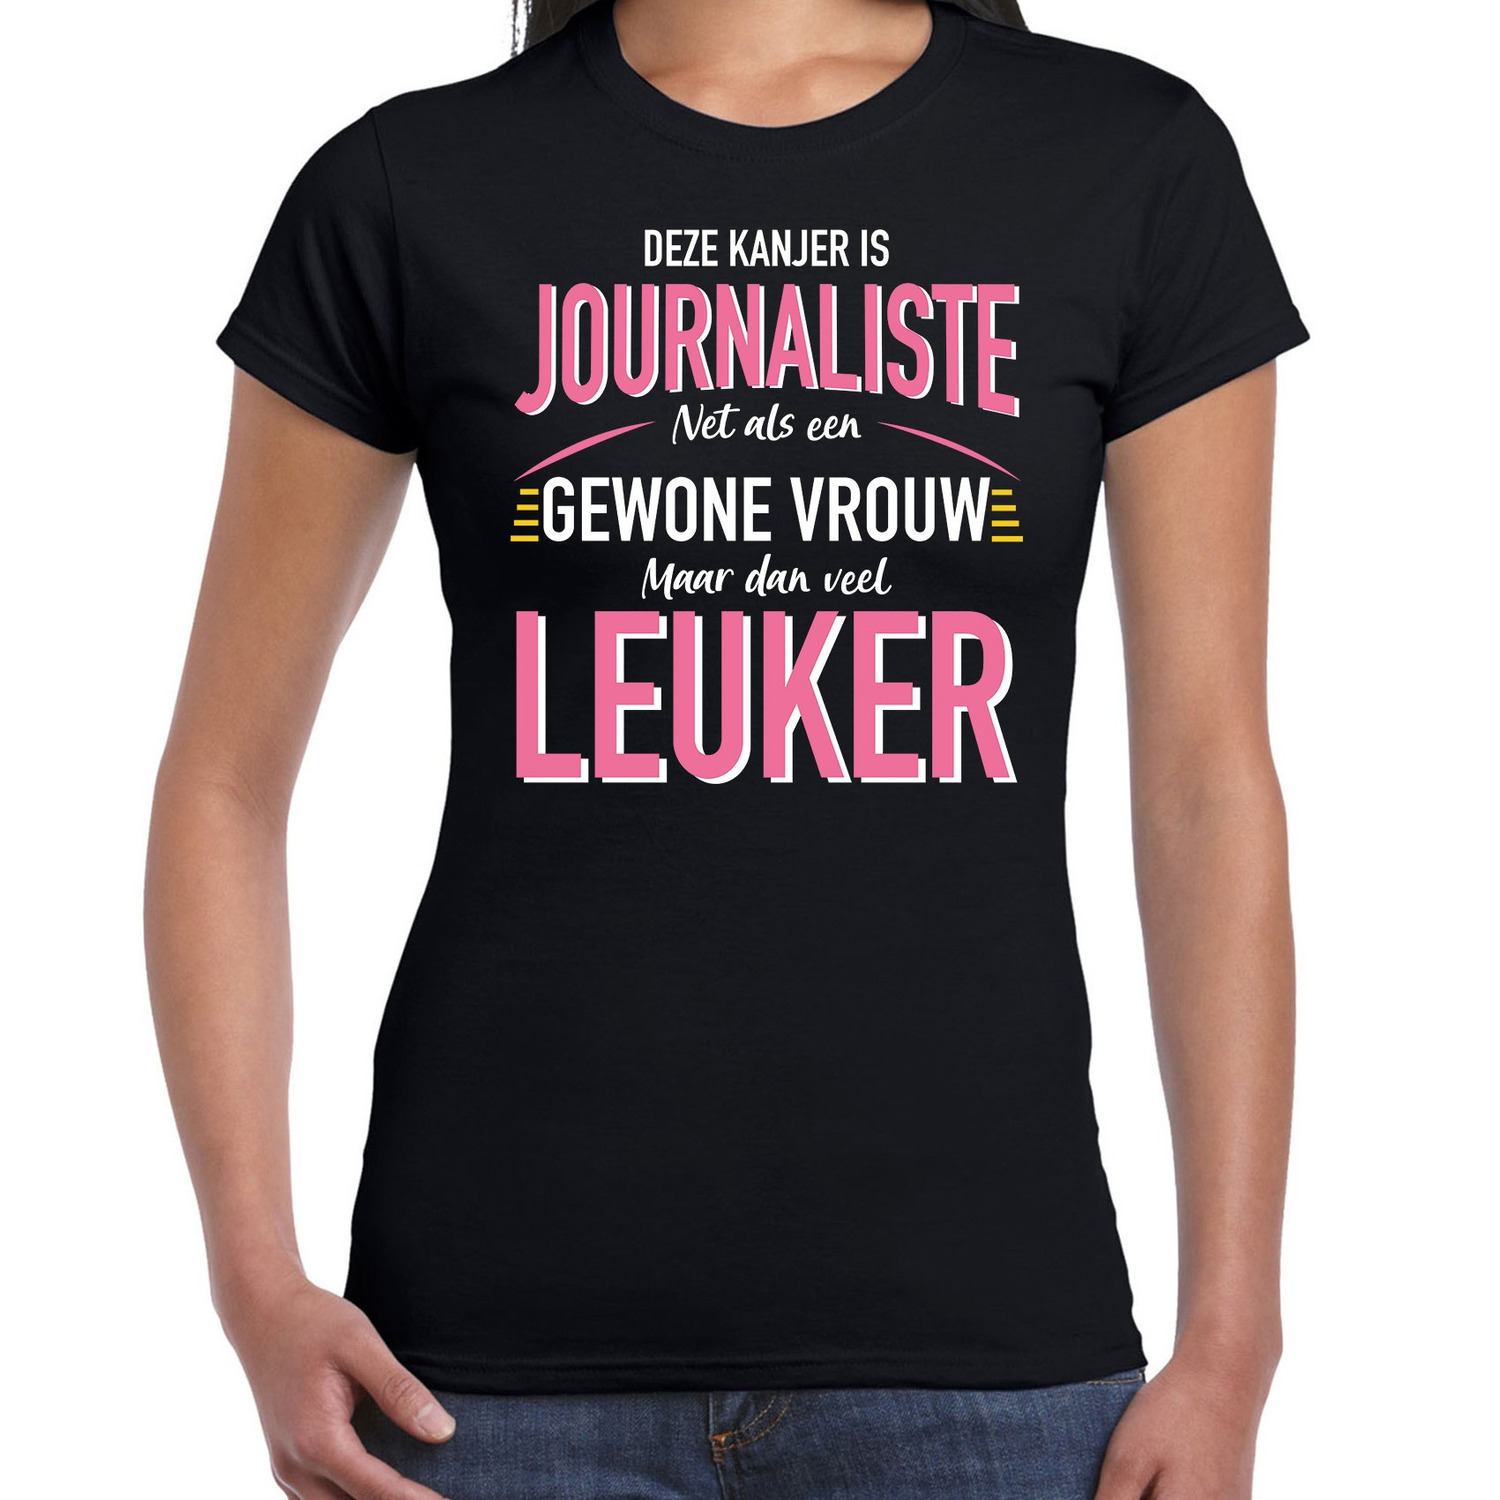 Journaliste-gewone vrouw fun kado shirt zwart voor dames